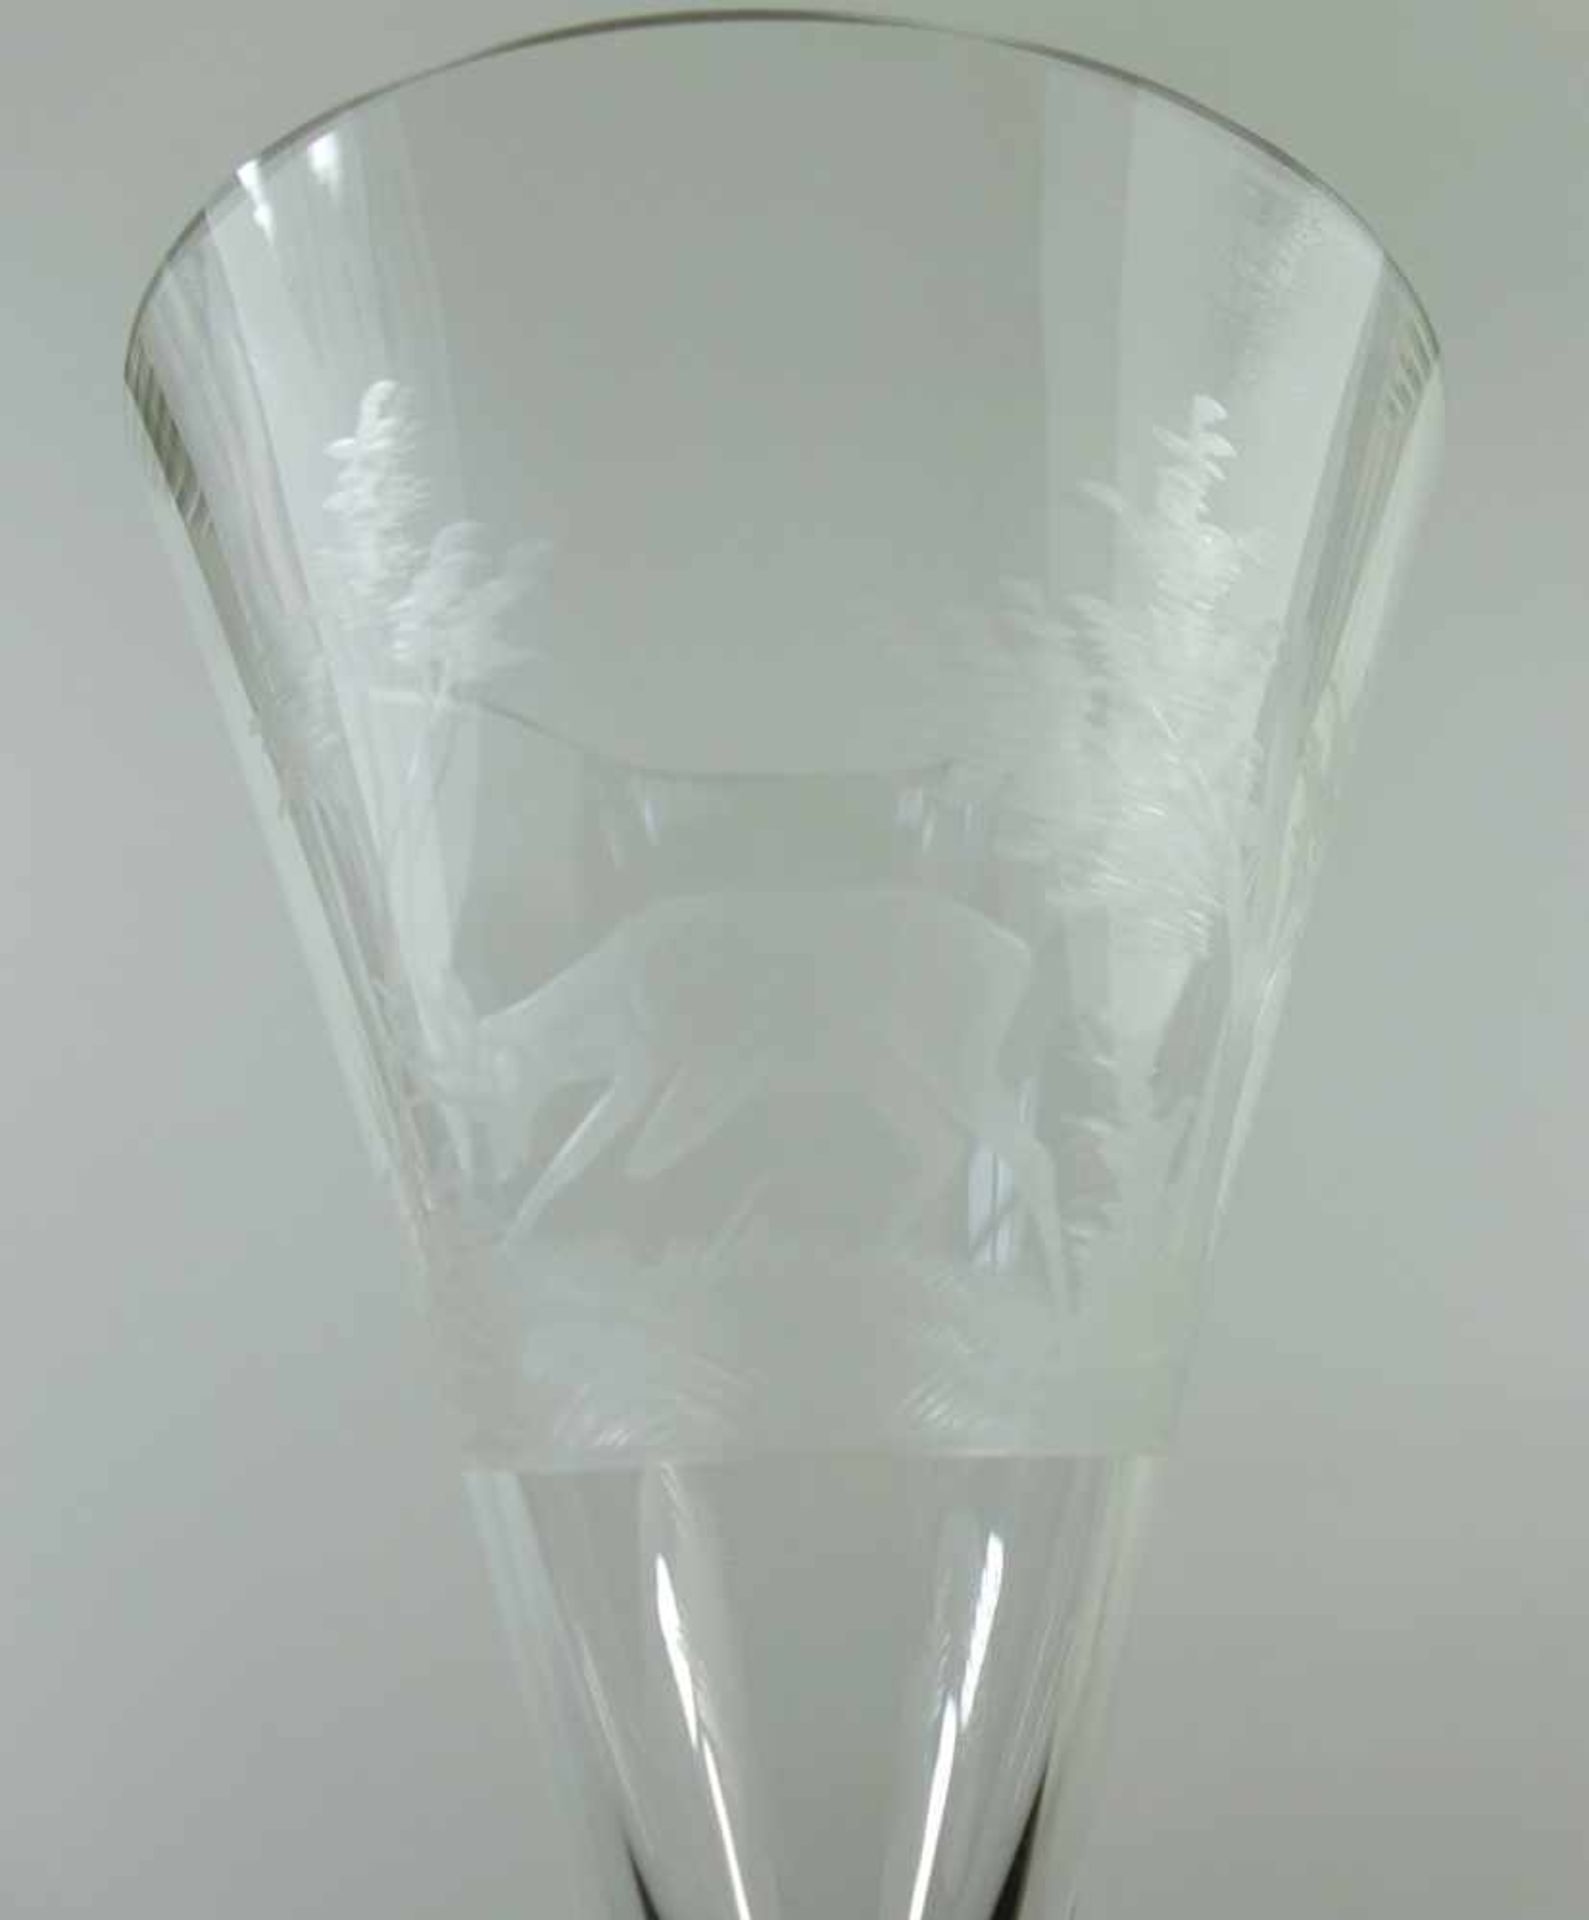 Sektglas mit Jagdmotiv, um 1910/20, Klarglas, runder Stand, schlanker Schaft, trichterförmige Kuppa, - Bild 2 aus 2